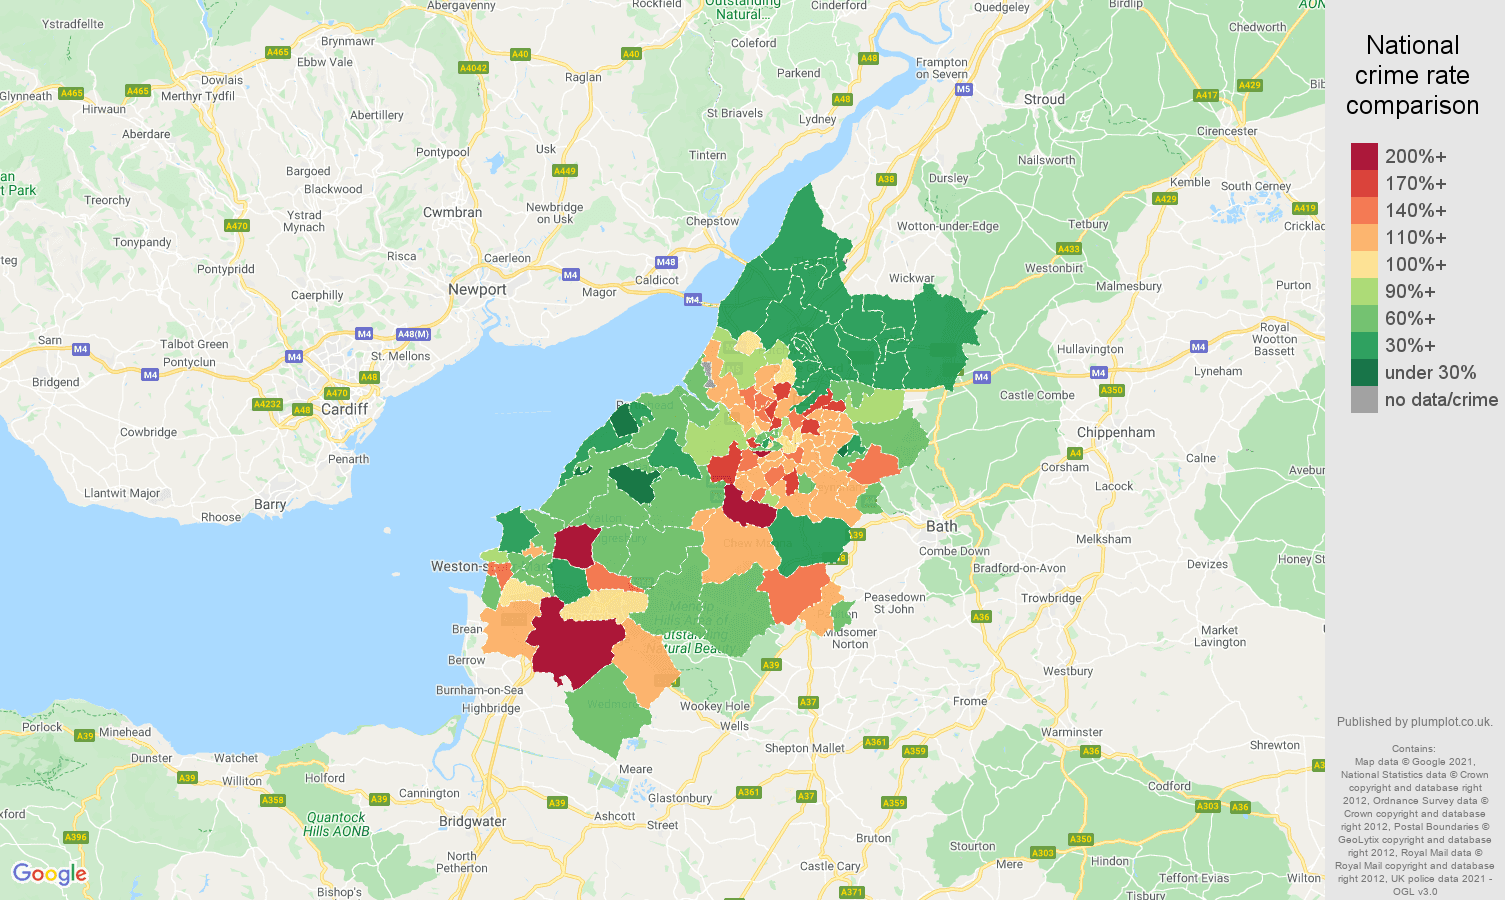 Bristol burglary crime rate comparison map